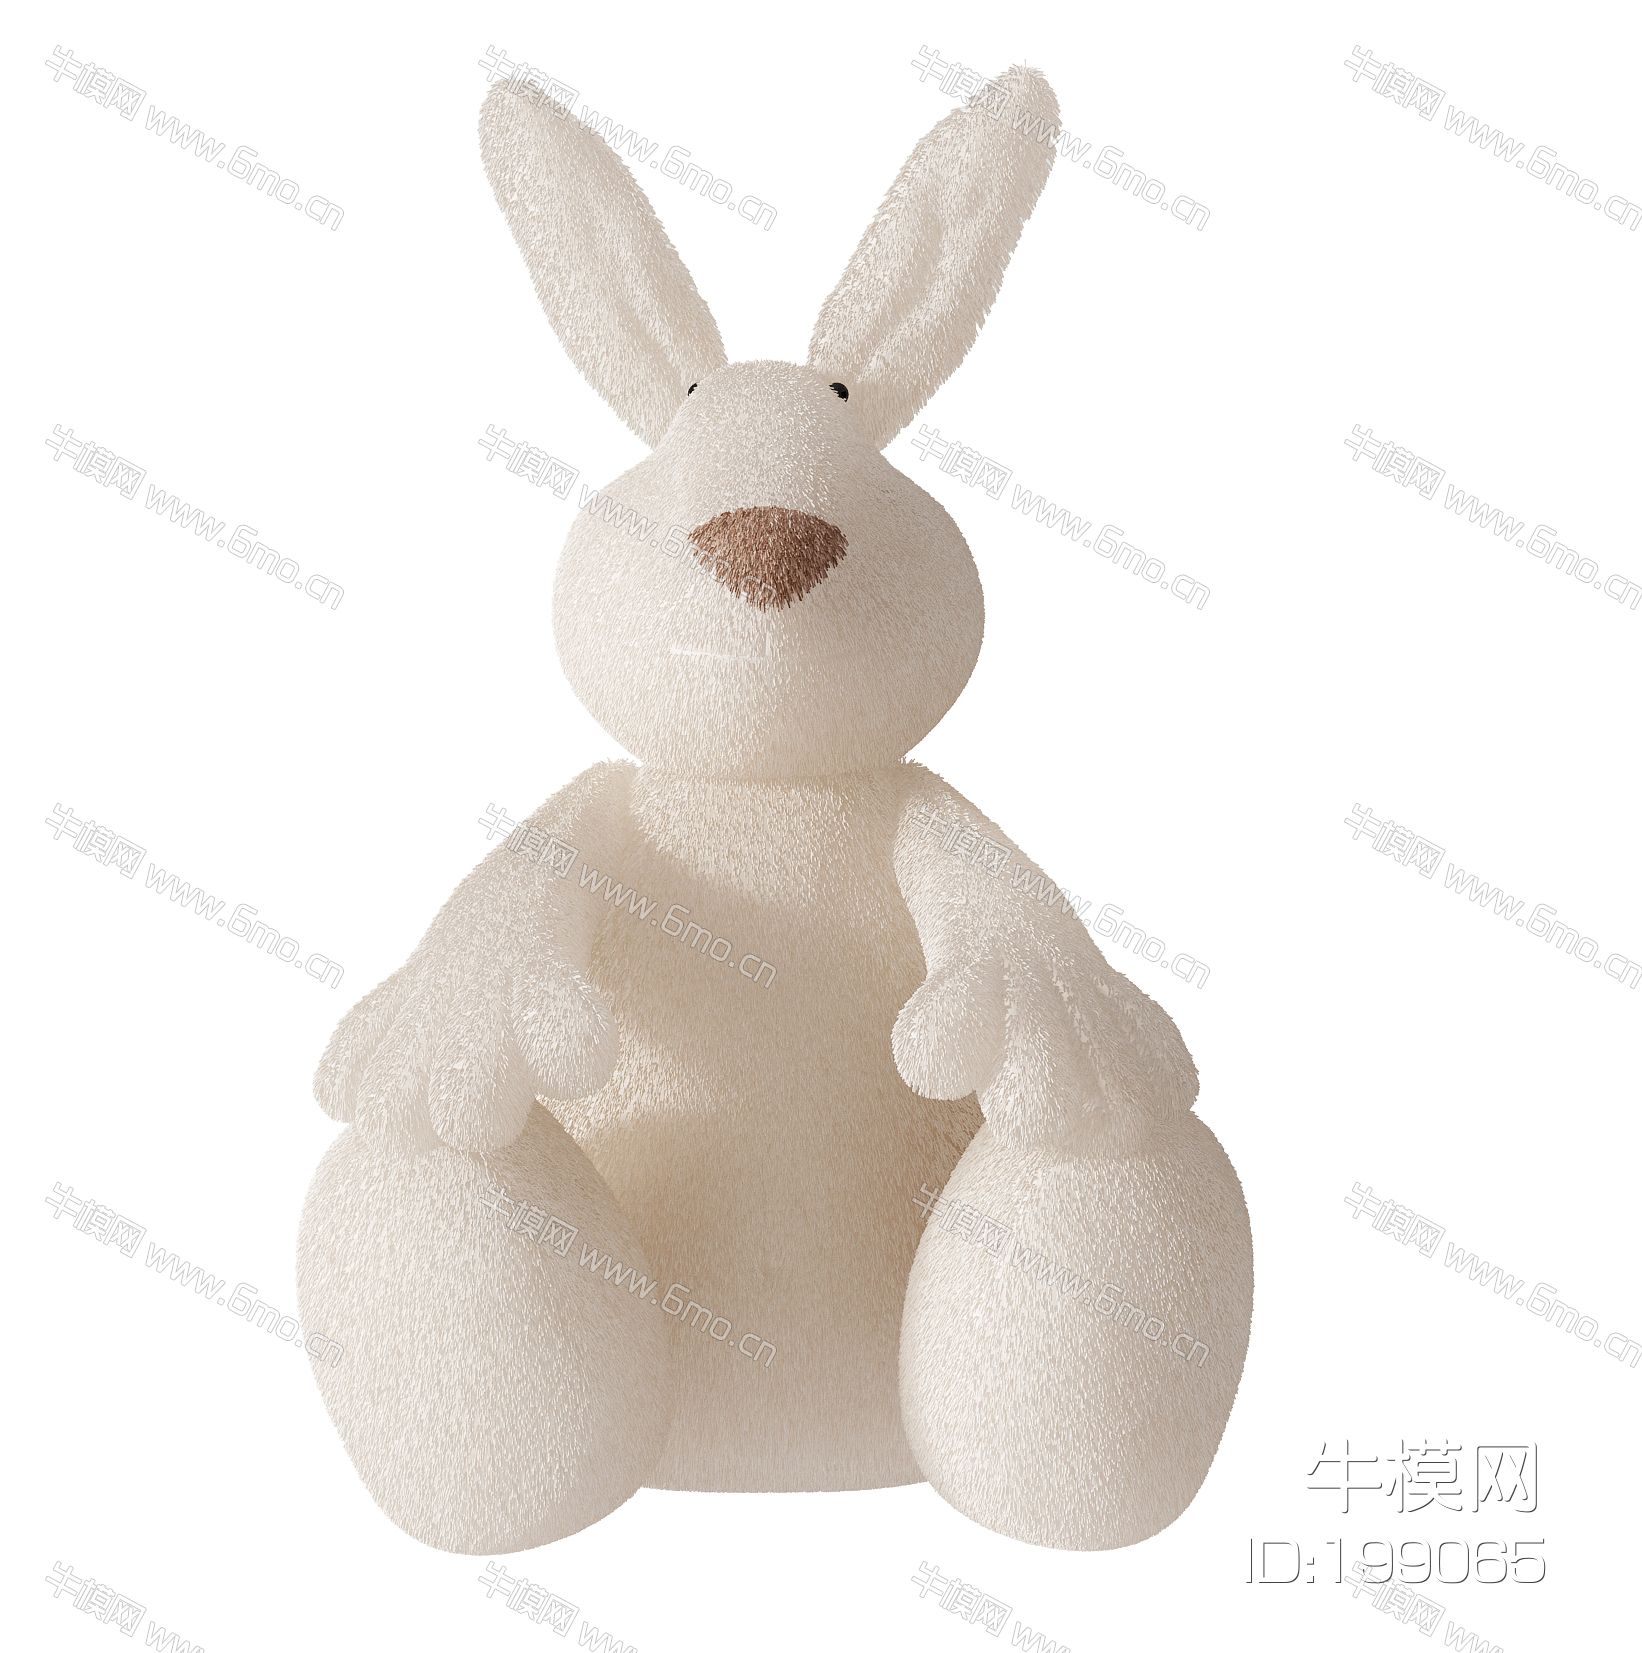 兔子玩偶,布娃娃,玩具 (2)